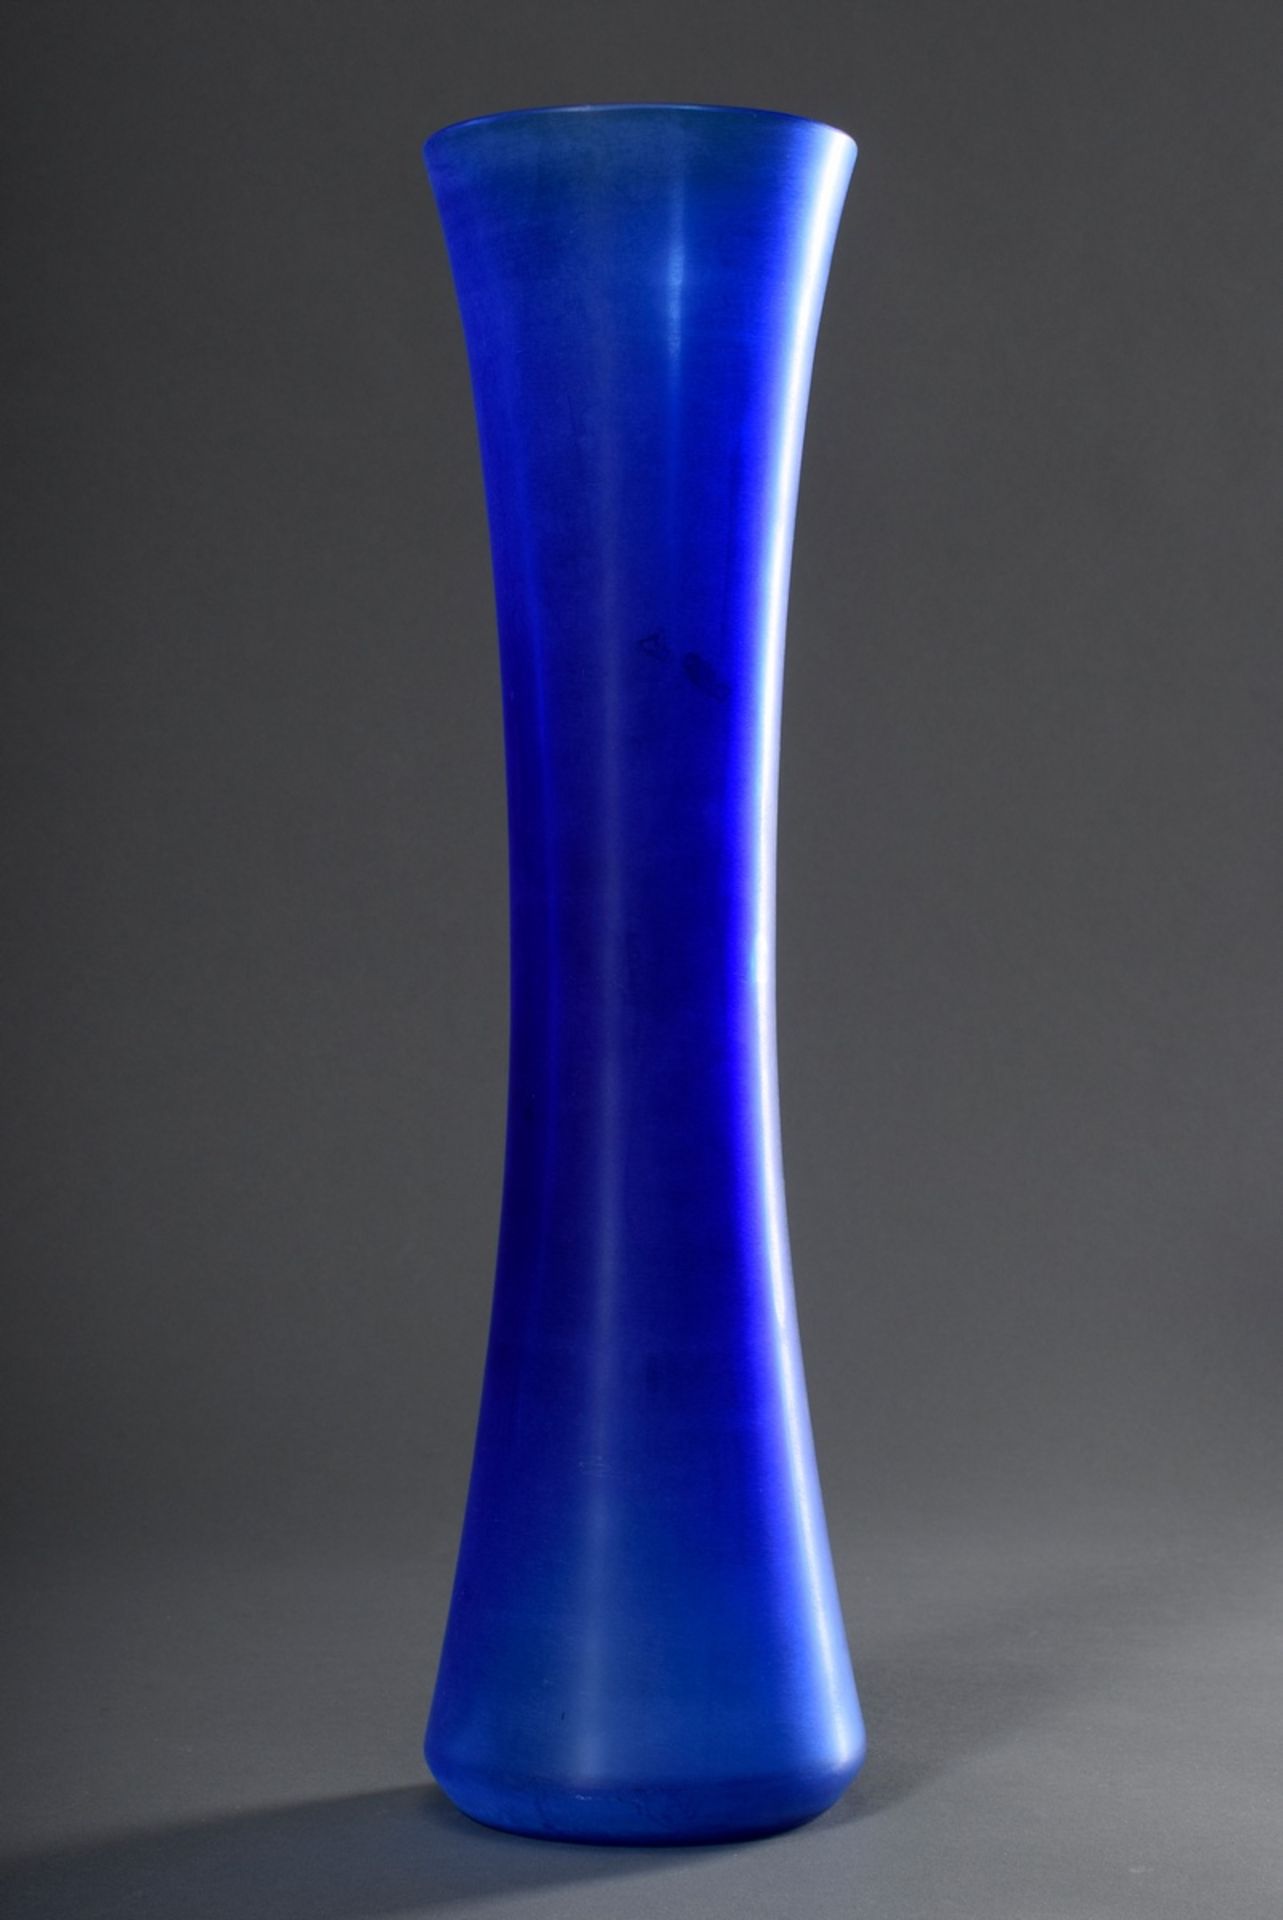 Hohe Salviati Stangenvase aus blauem Glas mit satinierter Oberfläche, am Boden - Bild 2 aus 4